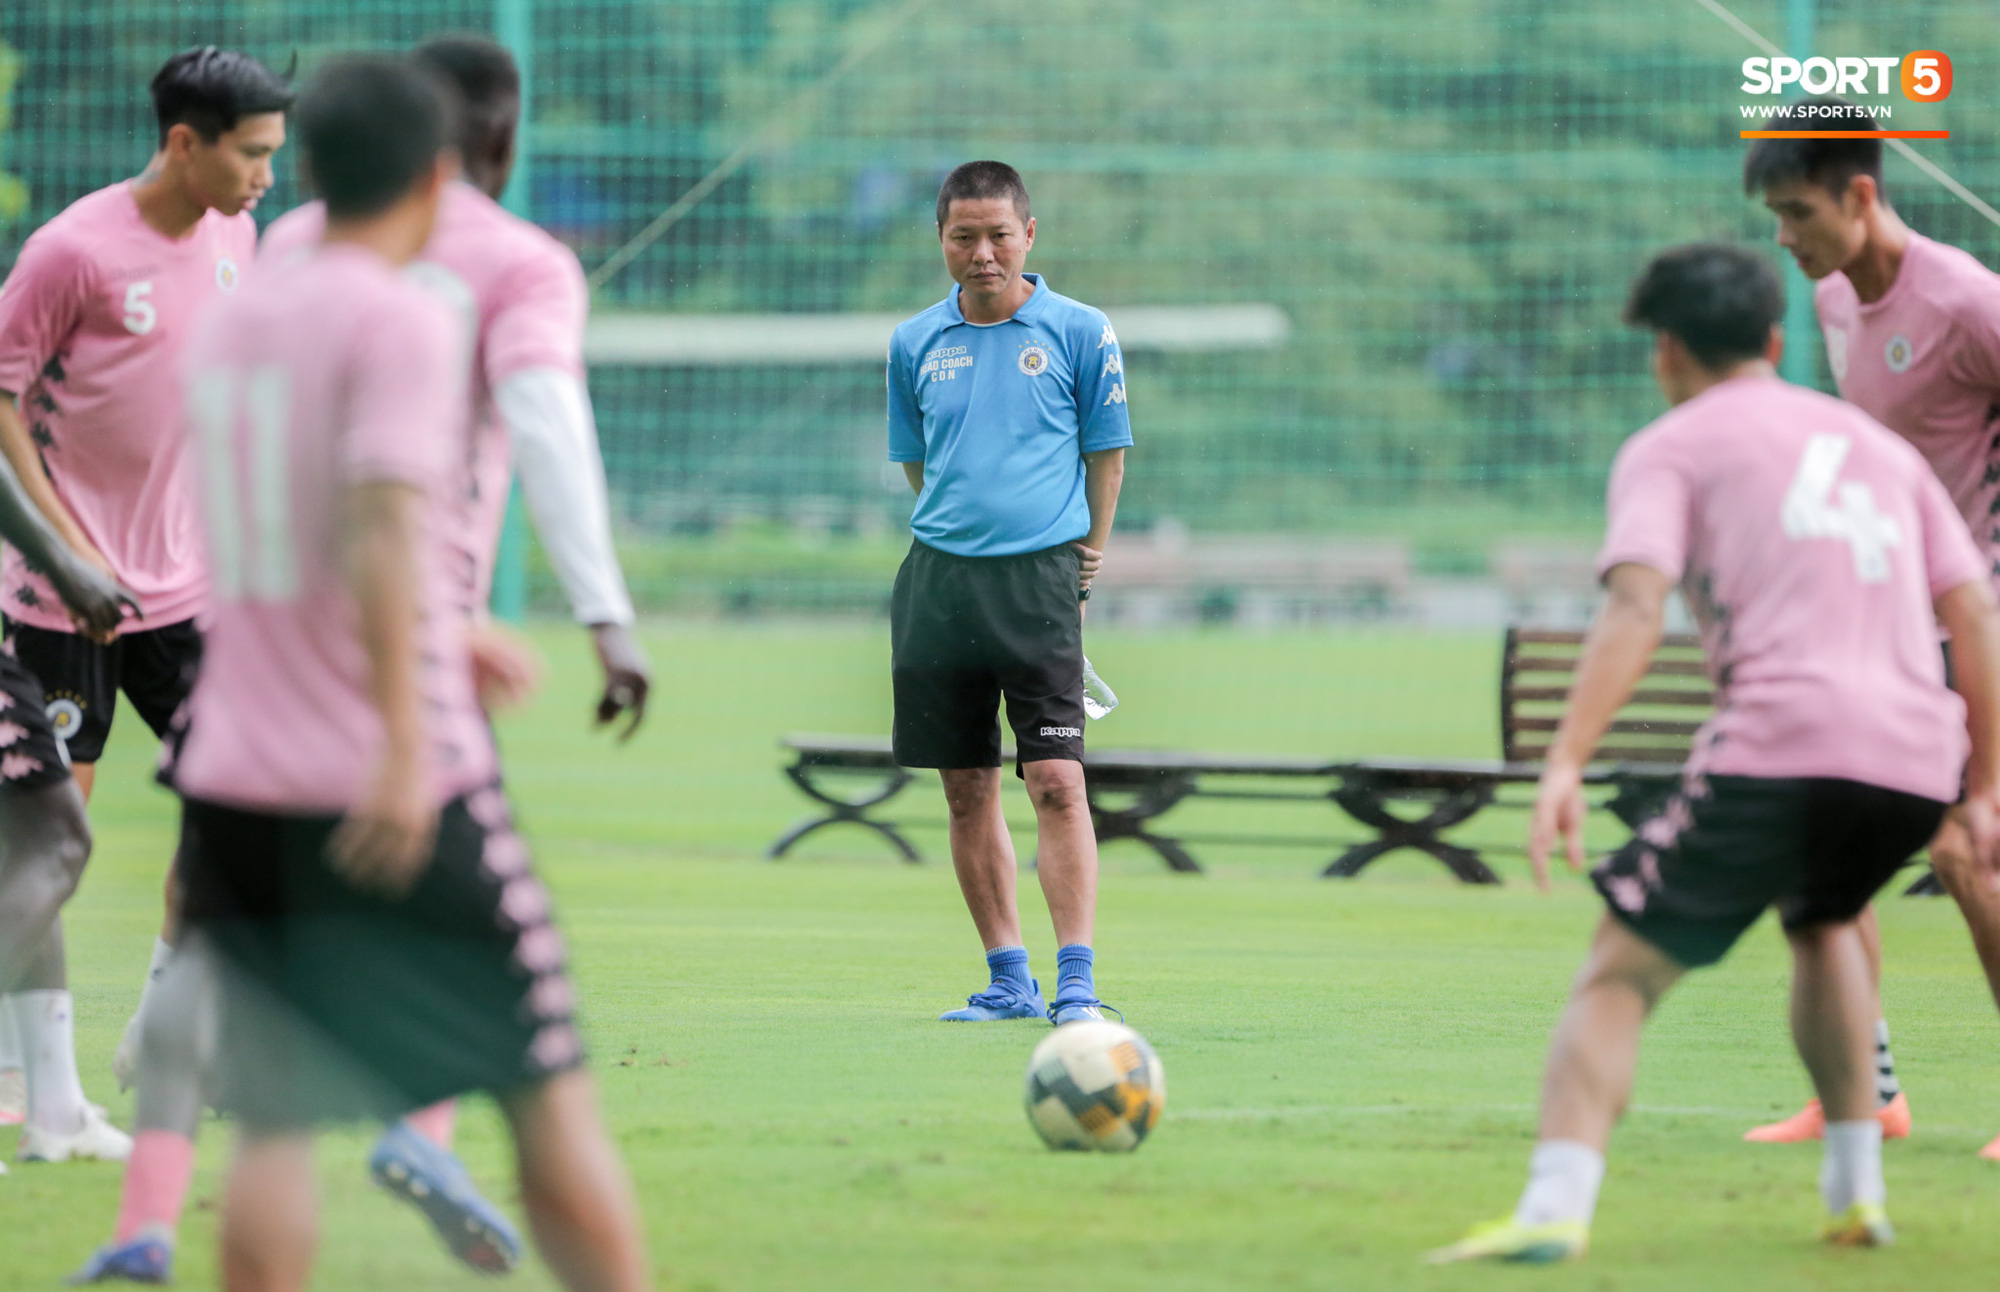 Văn Hậu huỷ đi chơi cùng bố mẹ, xin tập cùng Hà Nội FC ngay từ chiều 17/8 - Ảnh 2.